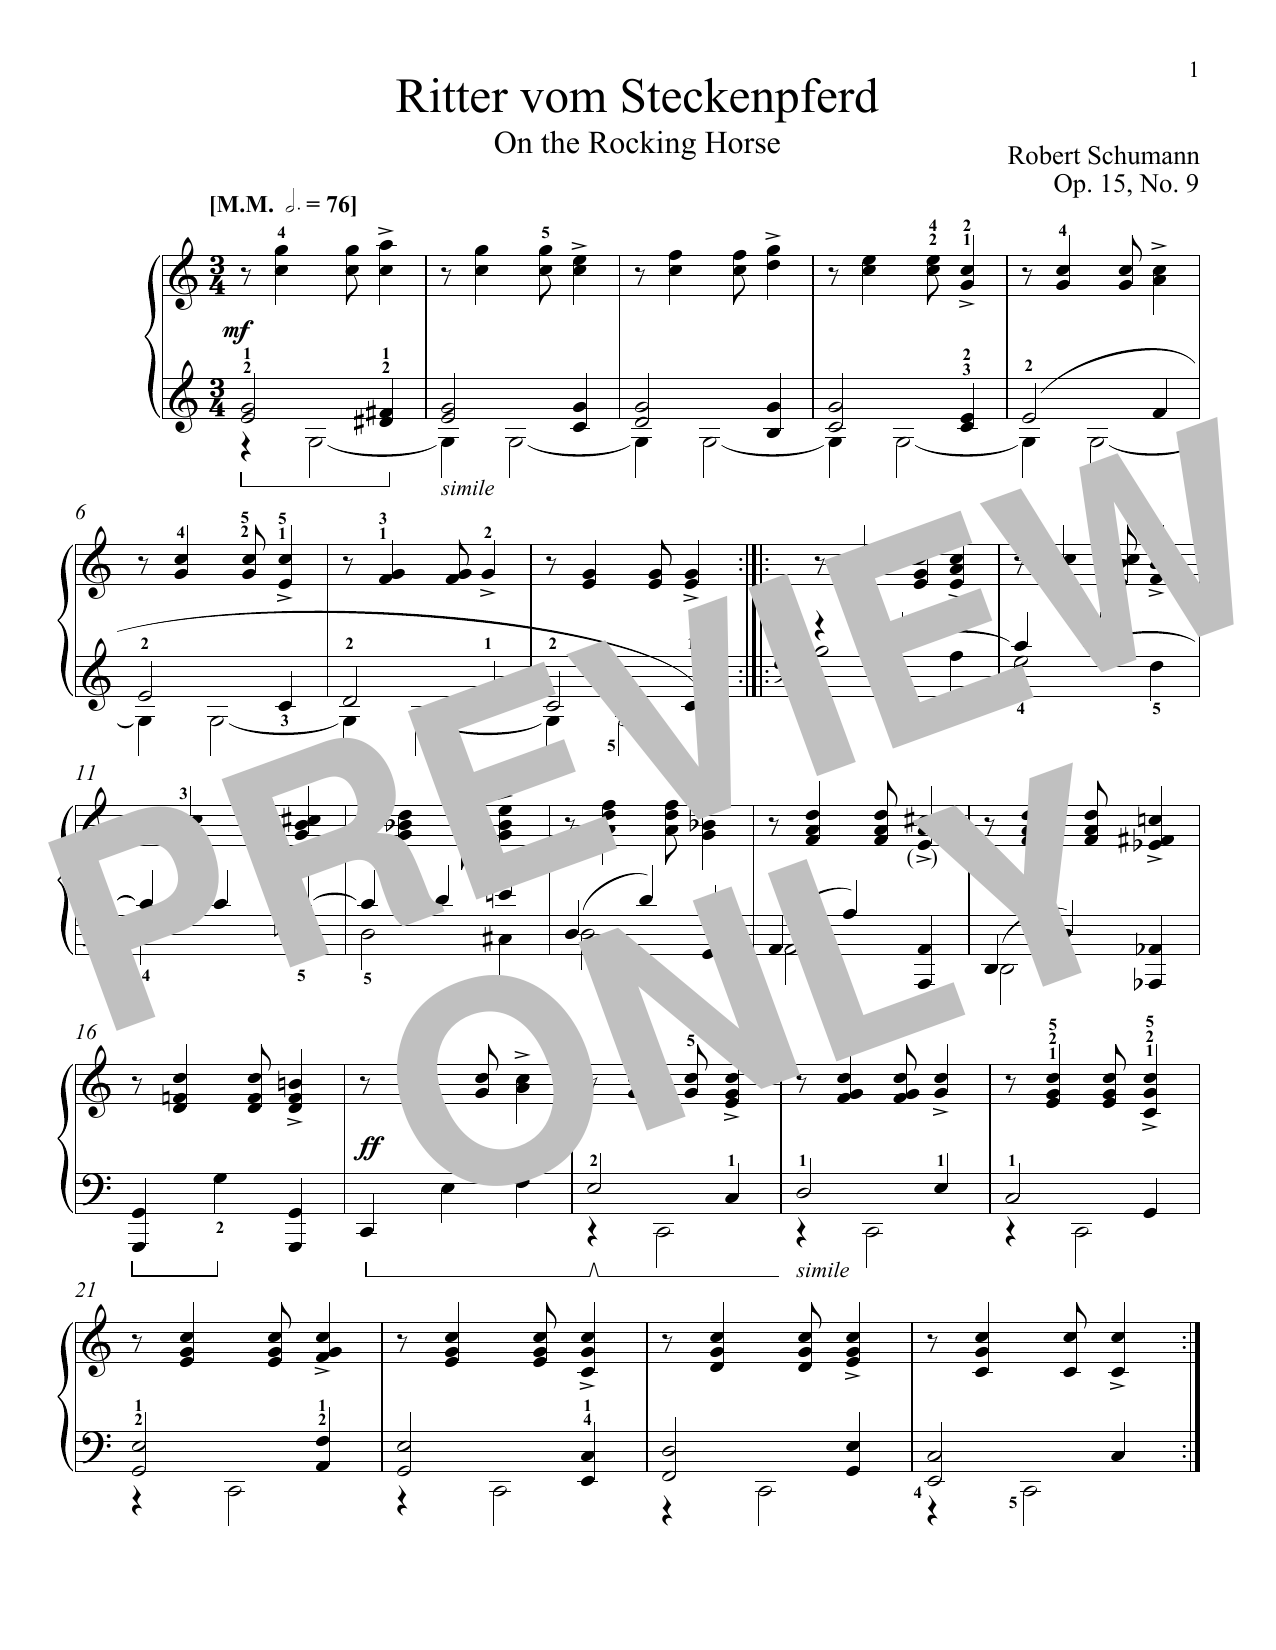 Download Robert Schumann The Knight Of The Rocking-Horse, Op. 15 Sheet Music